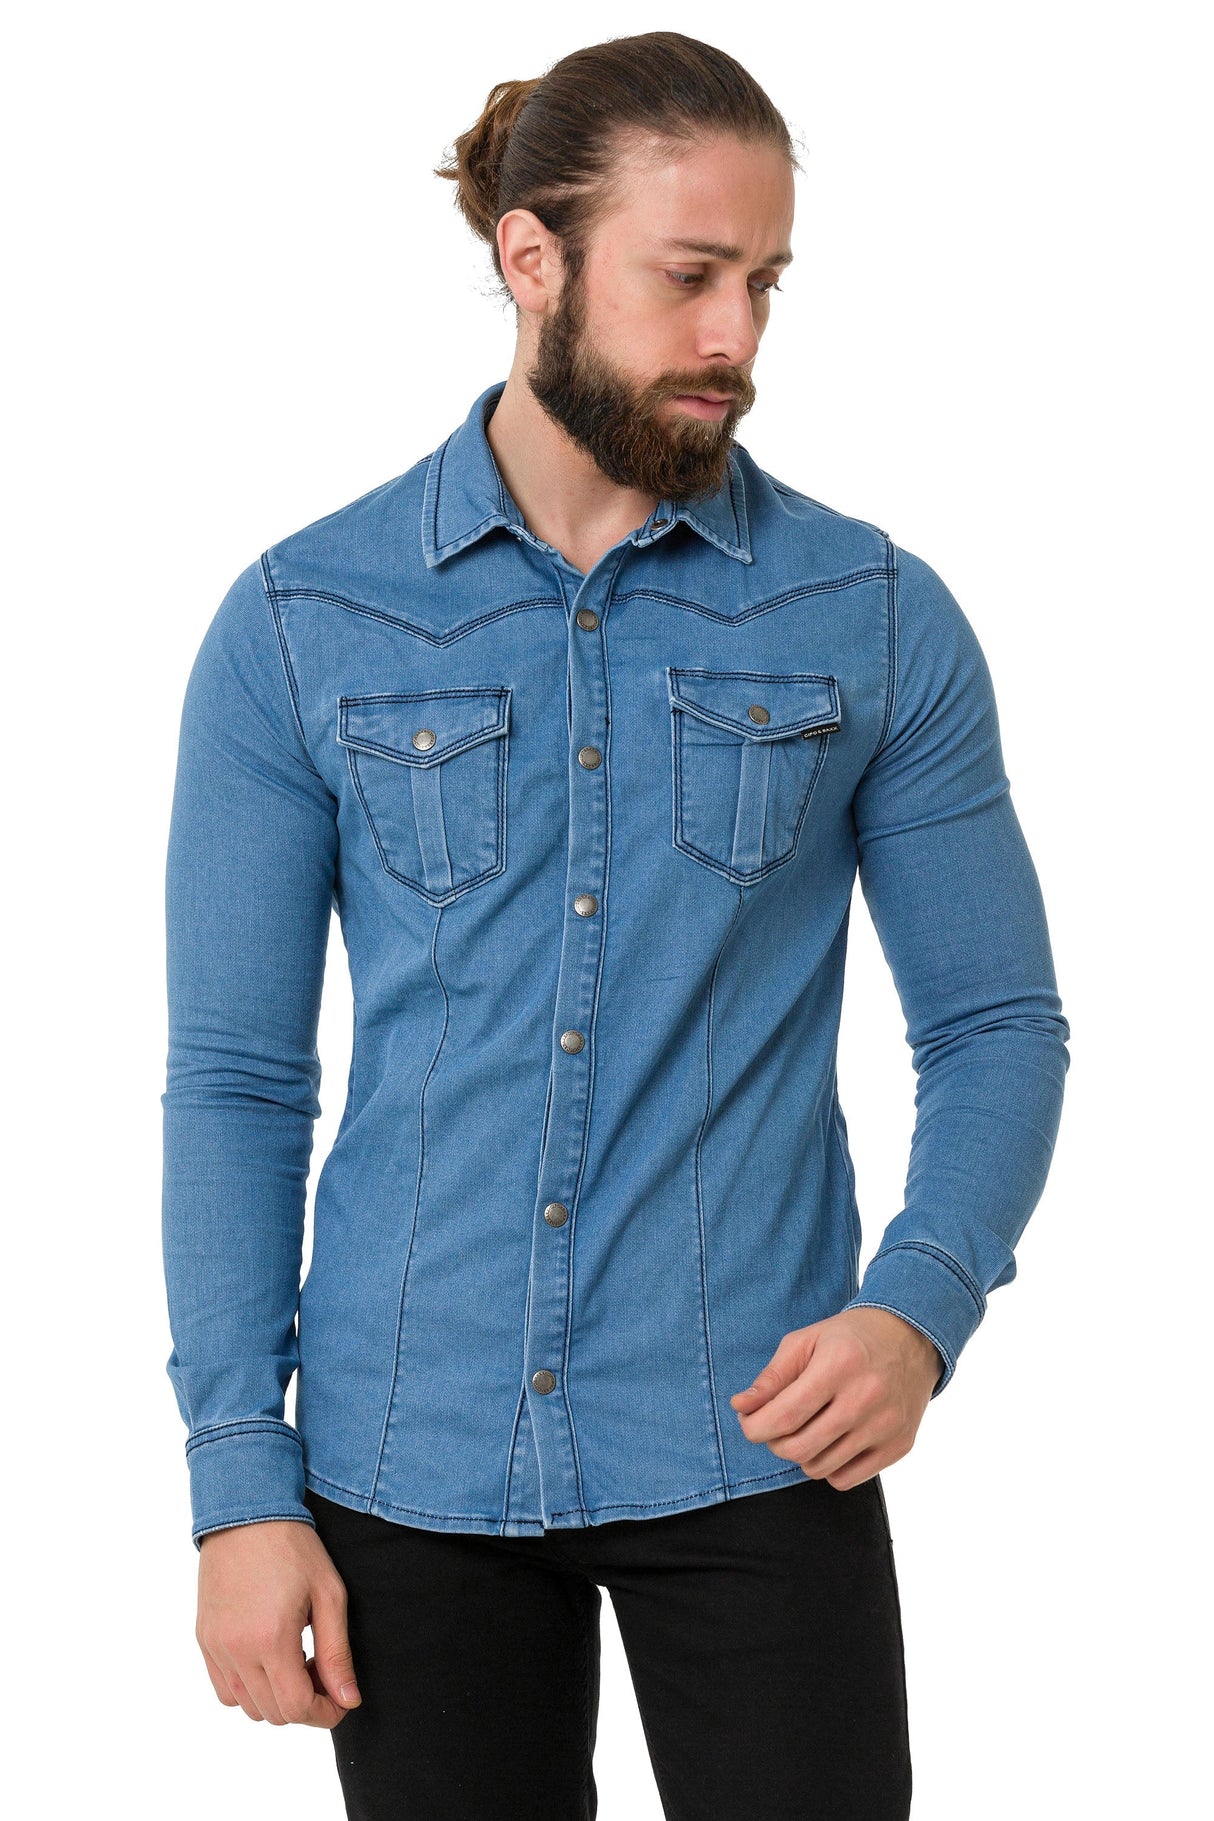 CH189 camicia jeans da uomo